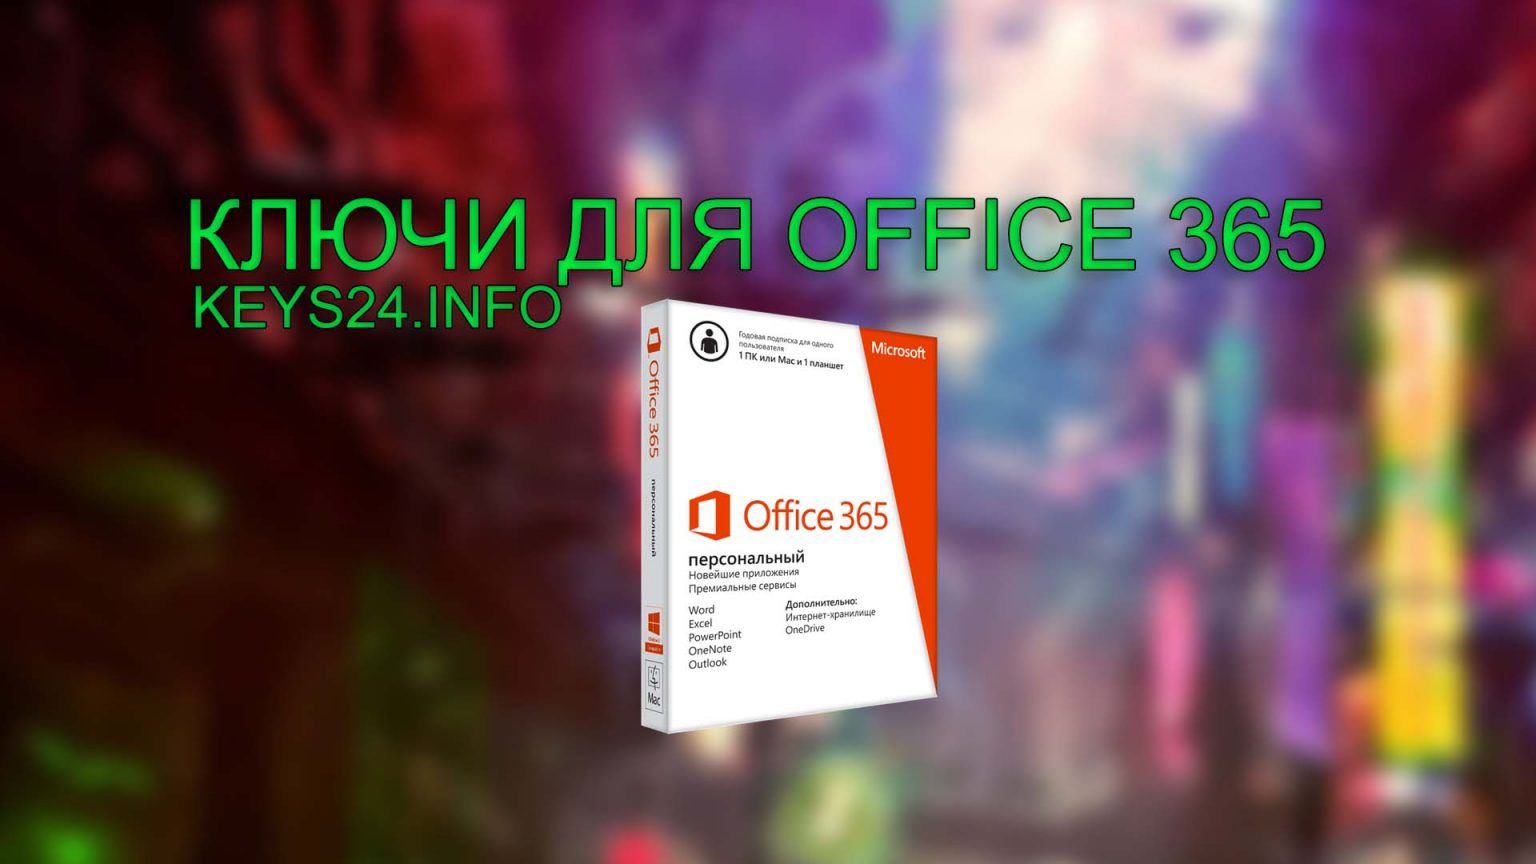 Ключи для office для дома. Ключ Майкрософт 365. Microsoft Office 365 ключ. MS Office 365 ключик активации.